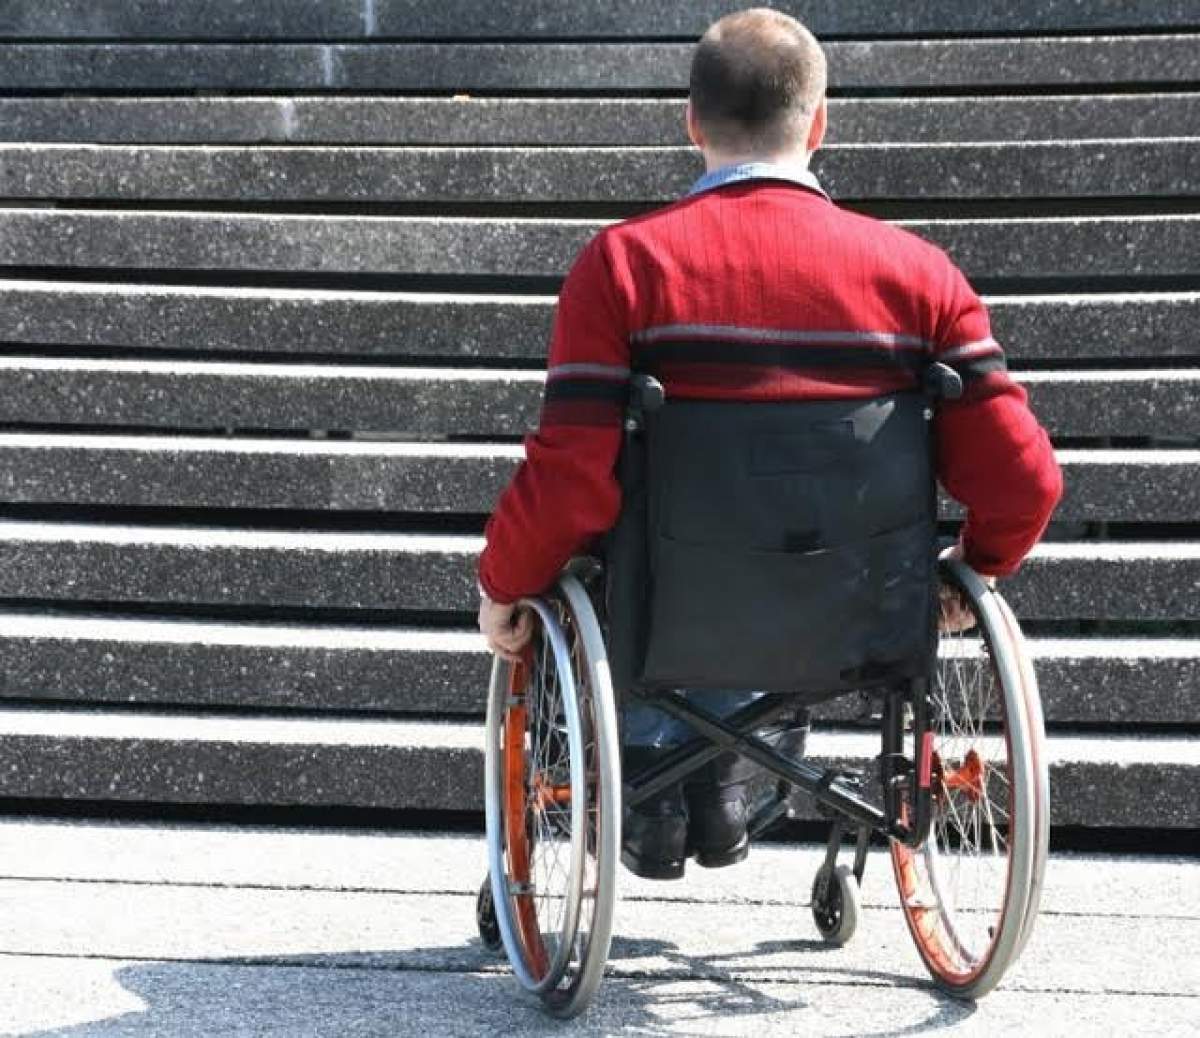 Un bărbat paralizat îşi mişcă mâinele cu ajutorul GÂNDURILOR! Ce îl ajută pe om să mănânce din nou singur, după 8 ani